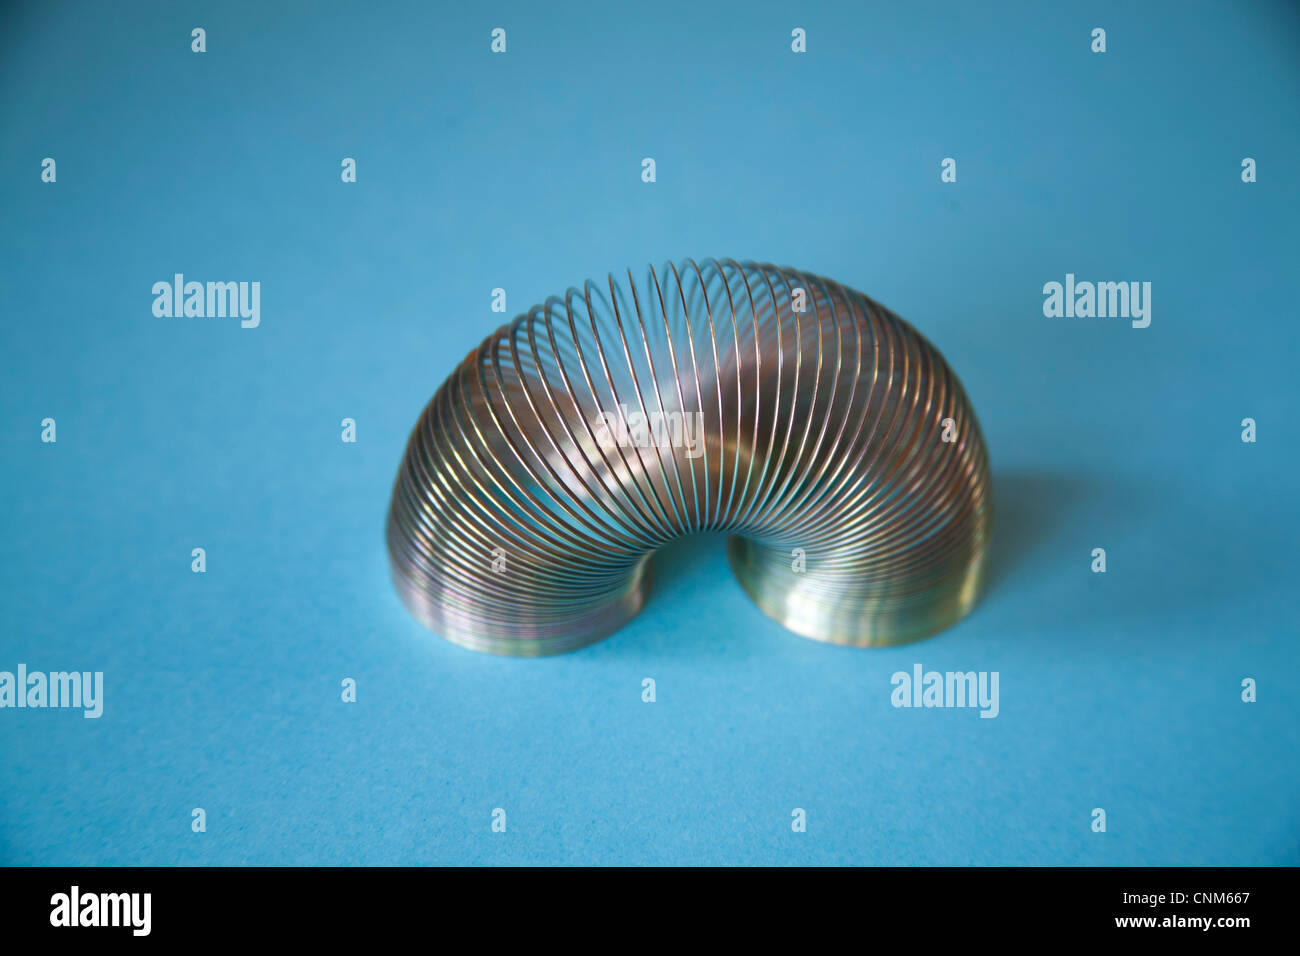 Slinky o perezoso juguete de resorte hechas de un resorte helicoidal que se extiende y puede rebotar hacia arriba y hacia abajo Foto de stock